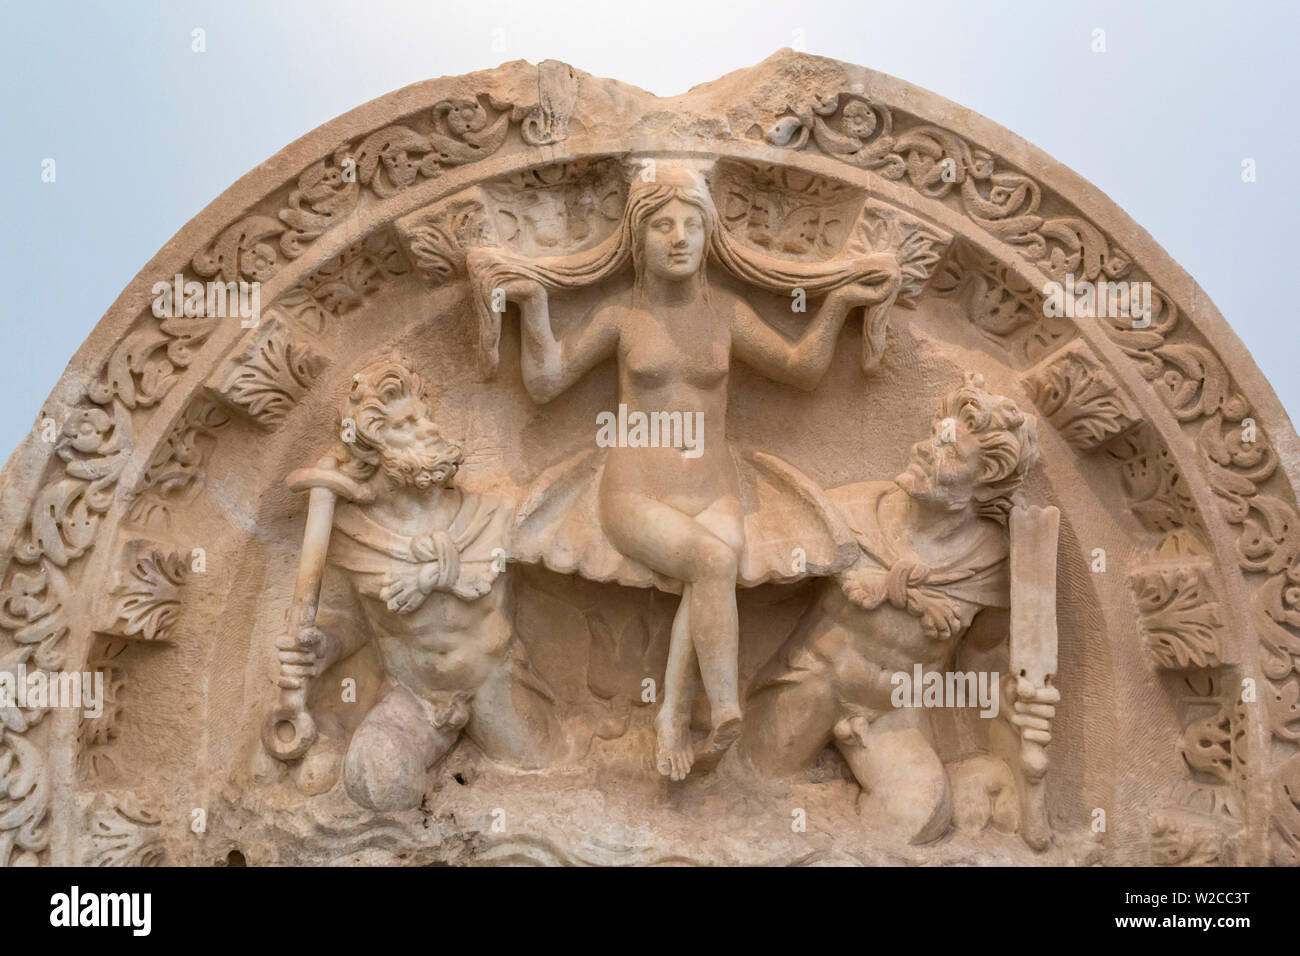 Escultura helenística en el museo de arqueología, Afrodisia, provincia de Aydin, Turquía Foto de stock